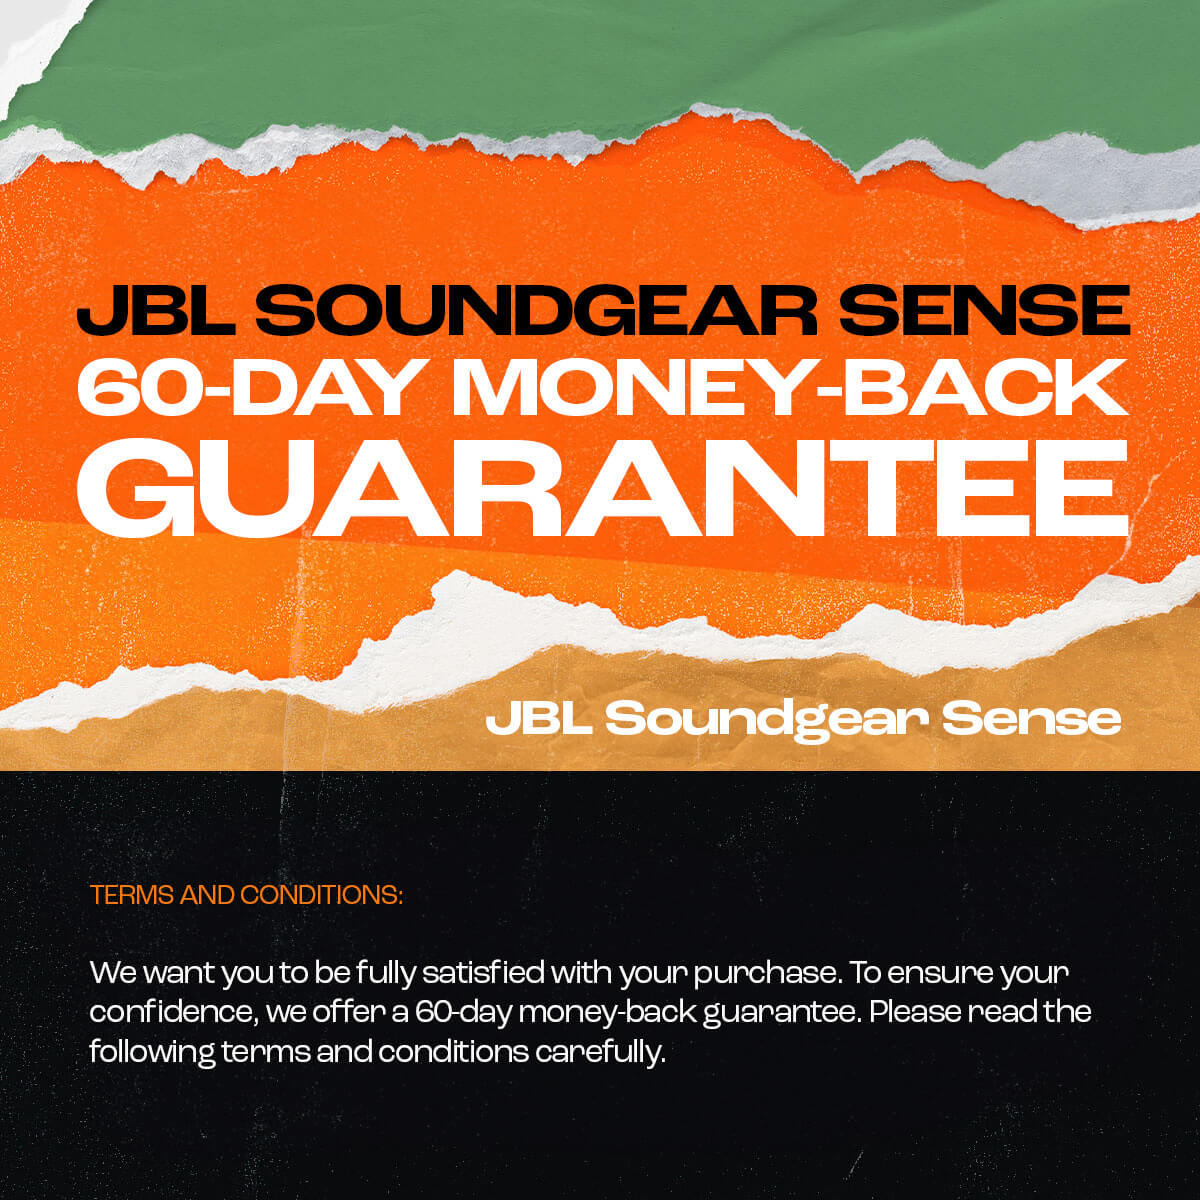 JBL Soundgear Sense - JBL Singapore